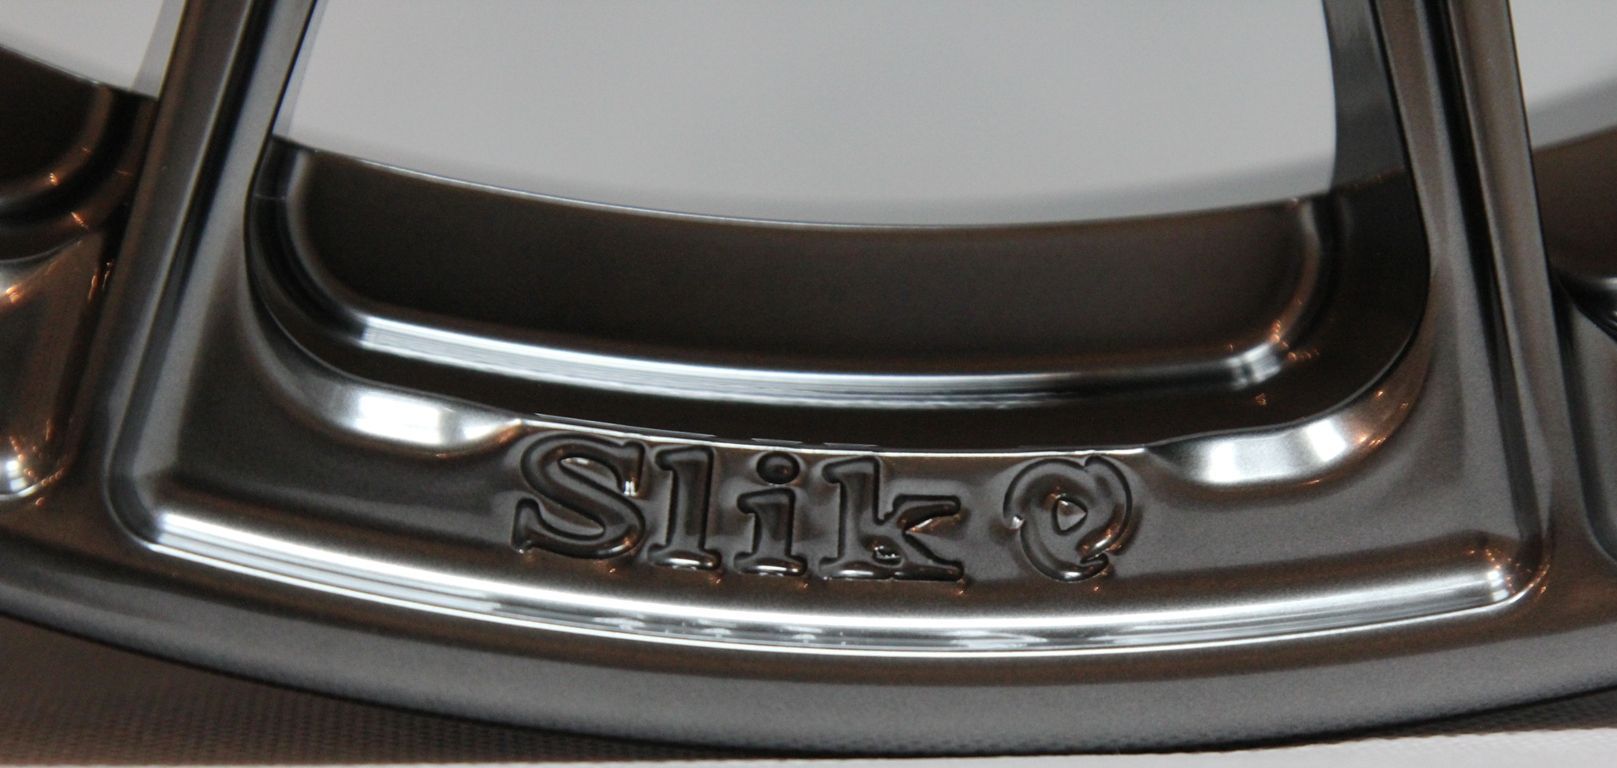 SLIK L-938 forged wheels new model